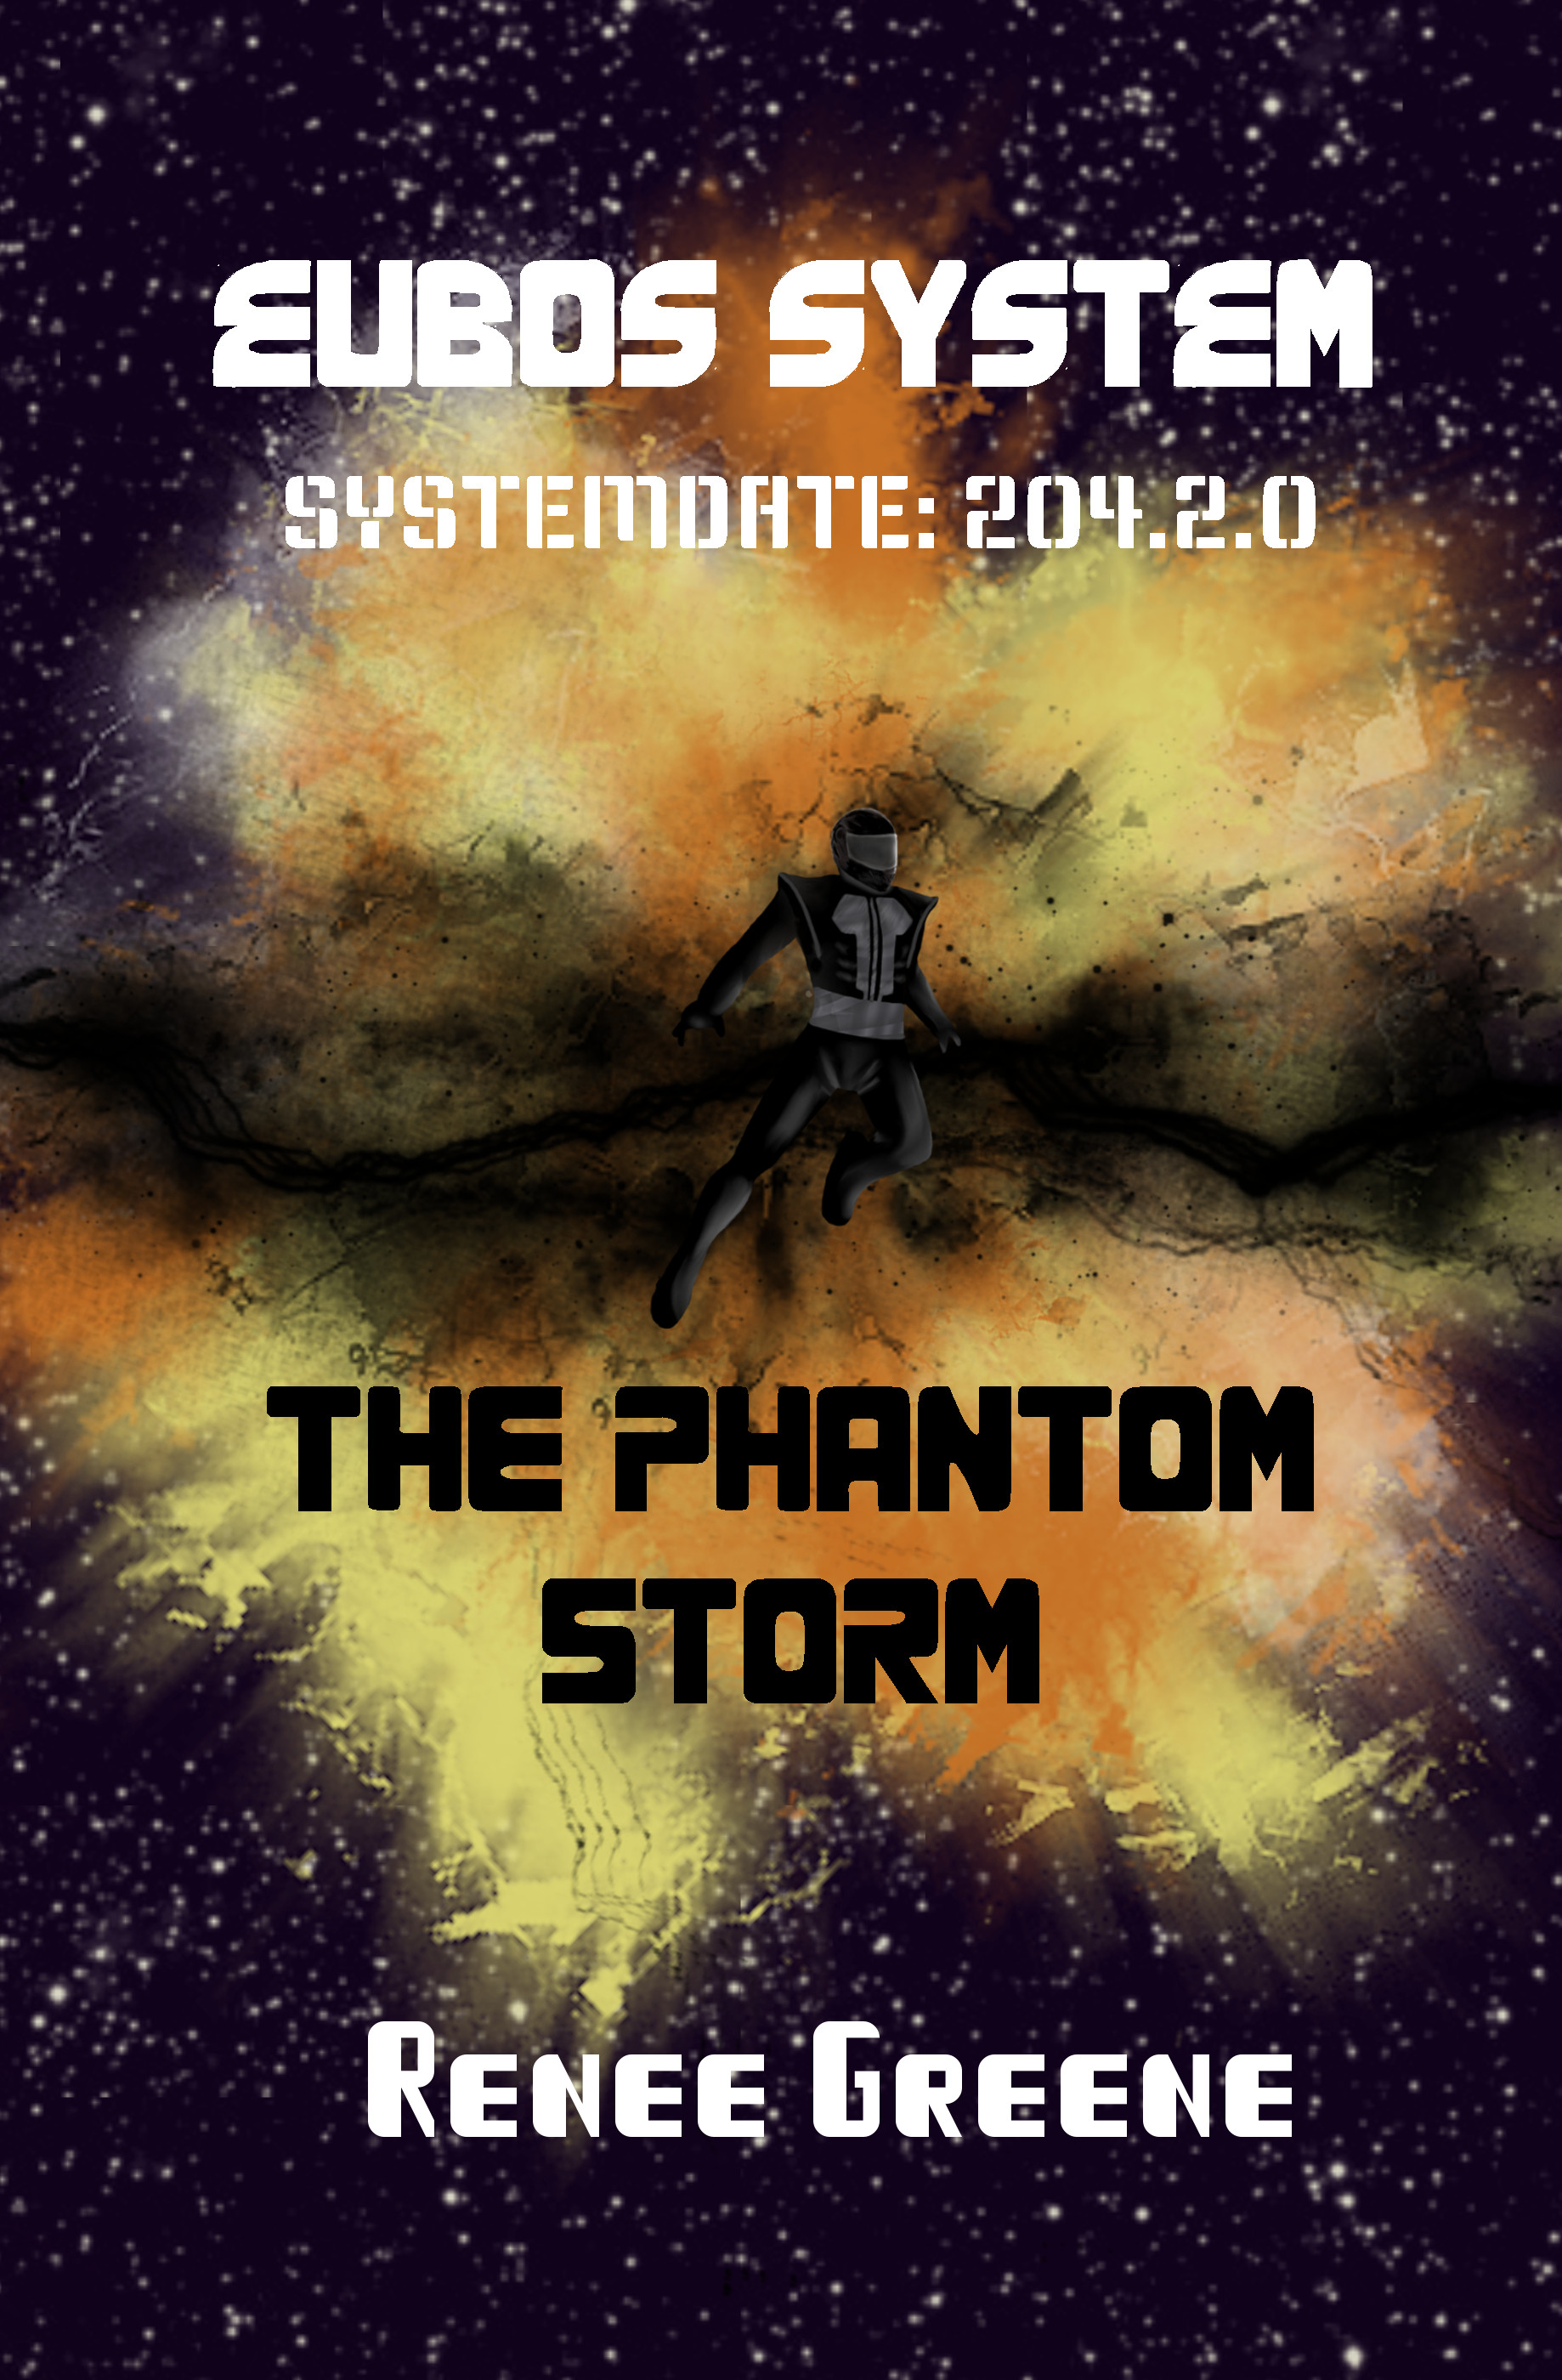 Eubos System Book 2: The Phantom Storm